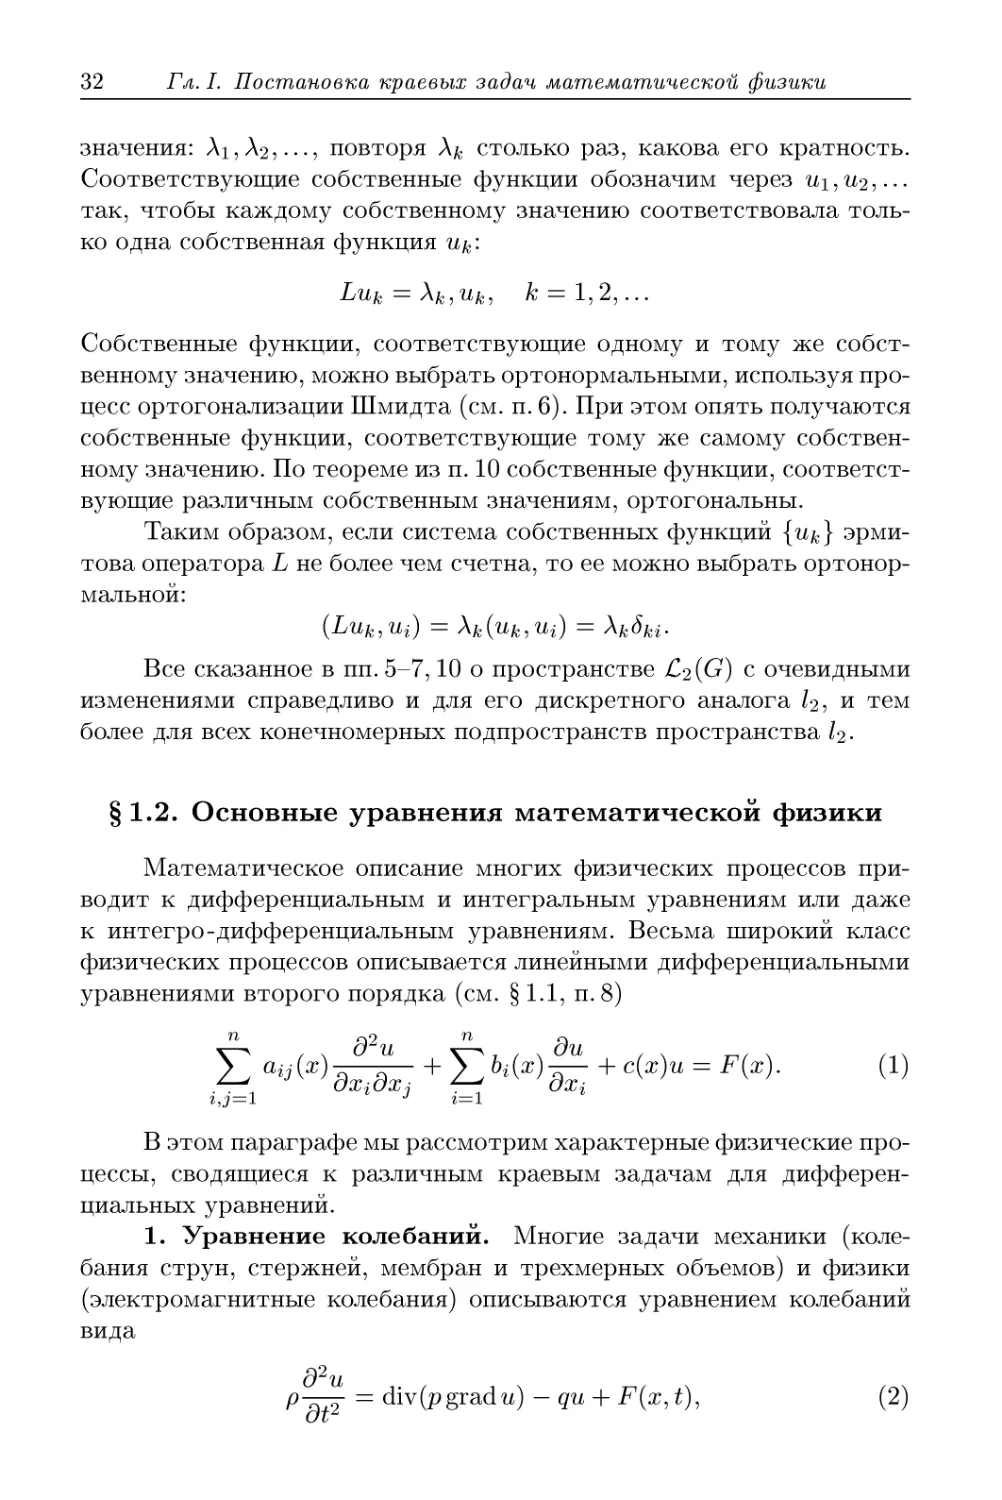 § 1.2. Основные уравнения математической физики